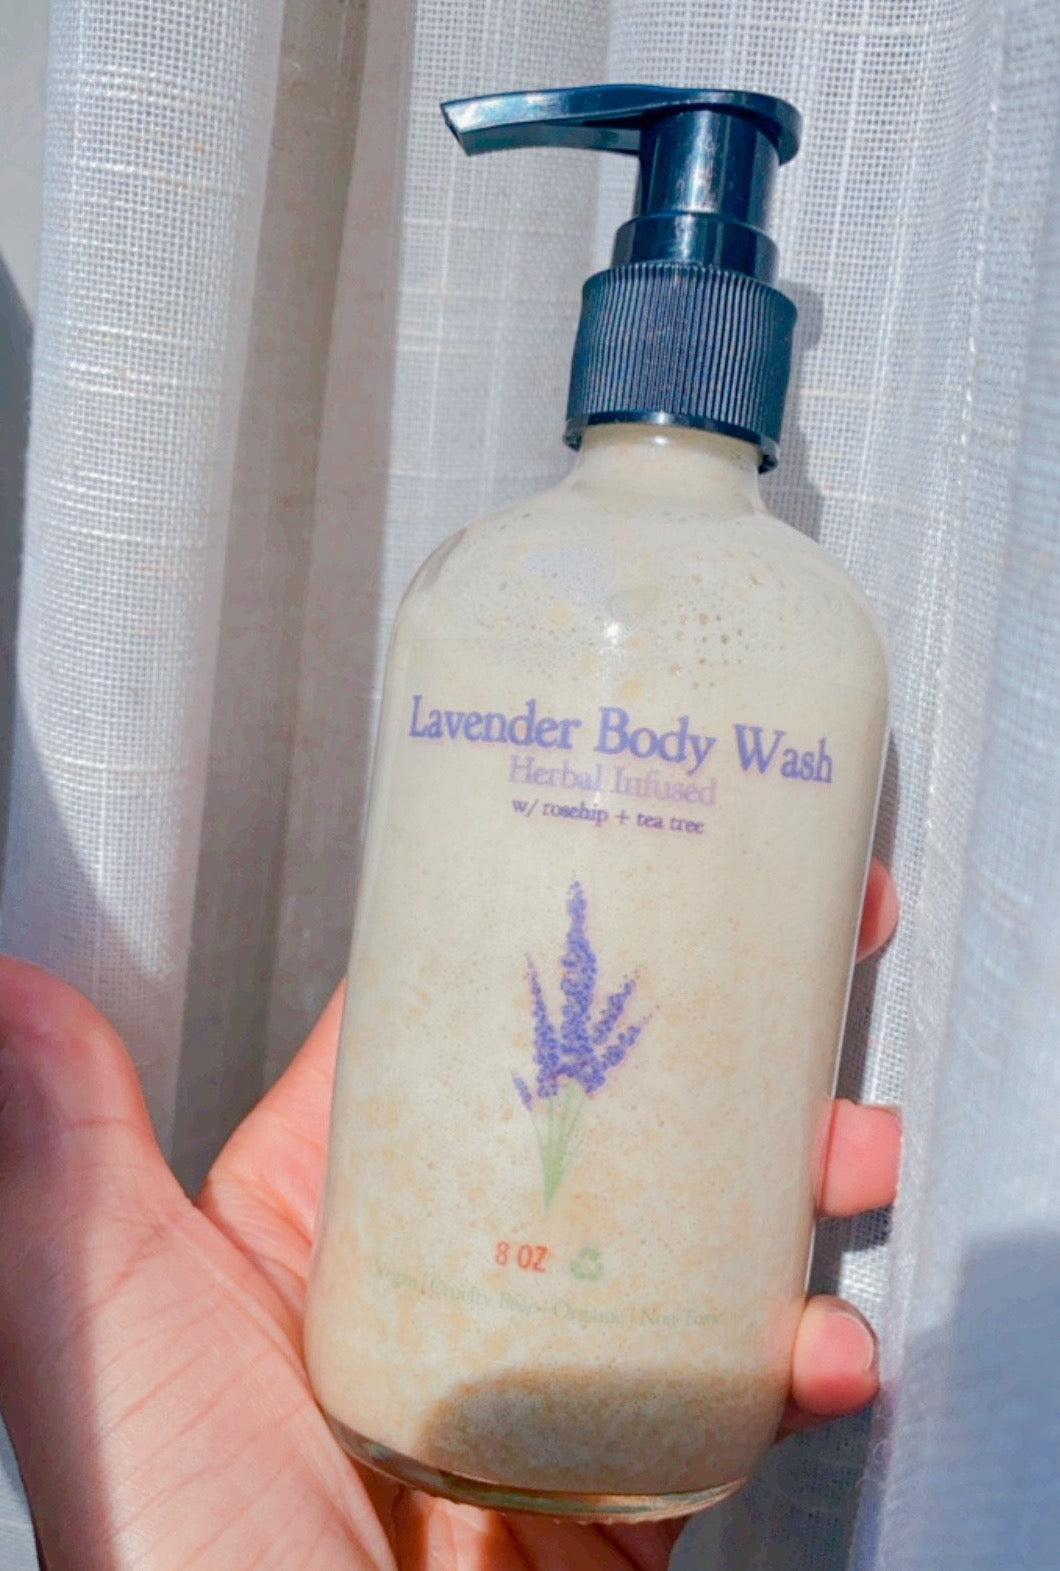 Lavender Body Wash - Herbal Infused